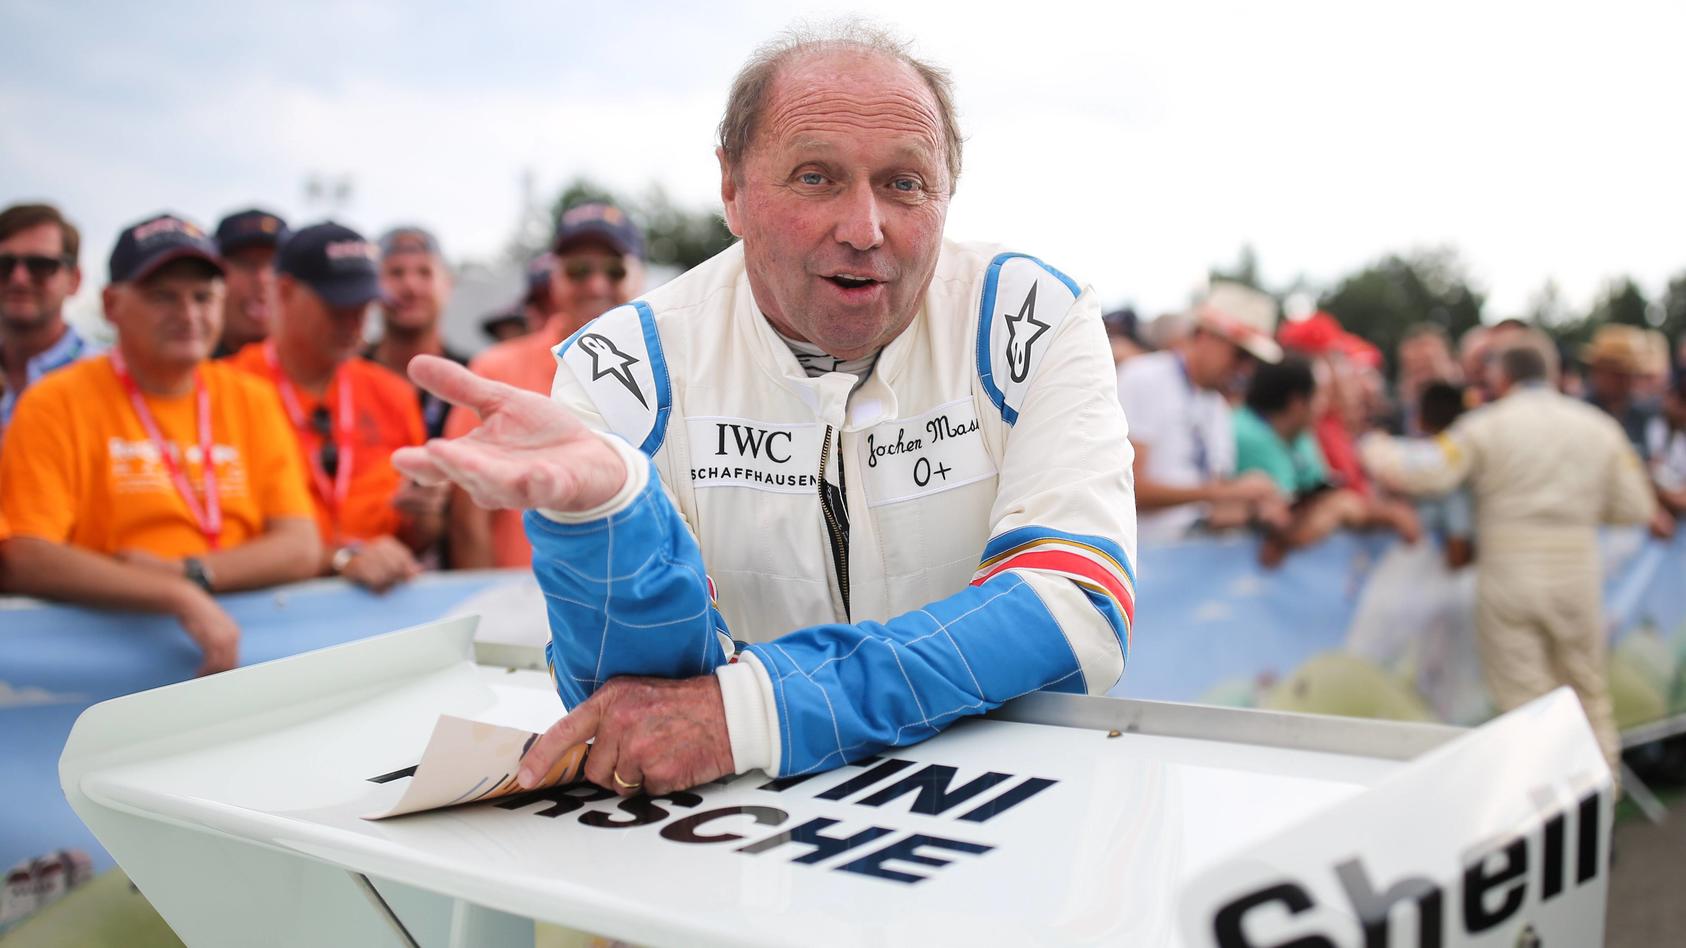 Jochen Maas startete von 1973 bis 1982 in der Formel 1, bestritt 105 Grands Prix